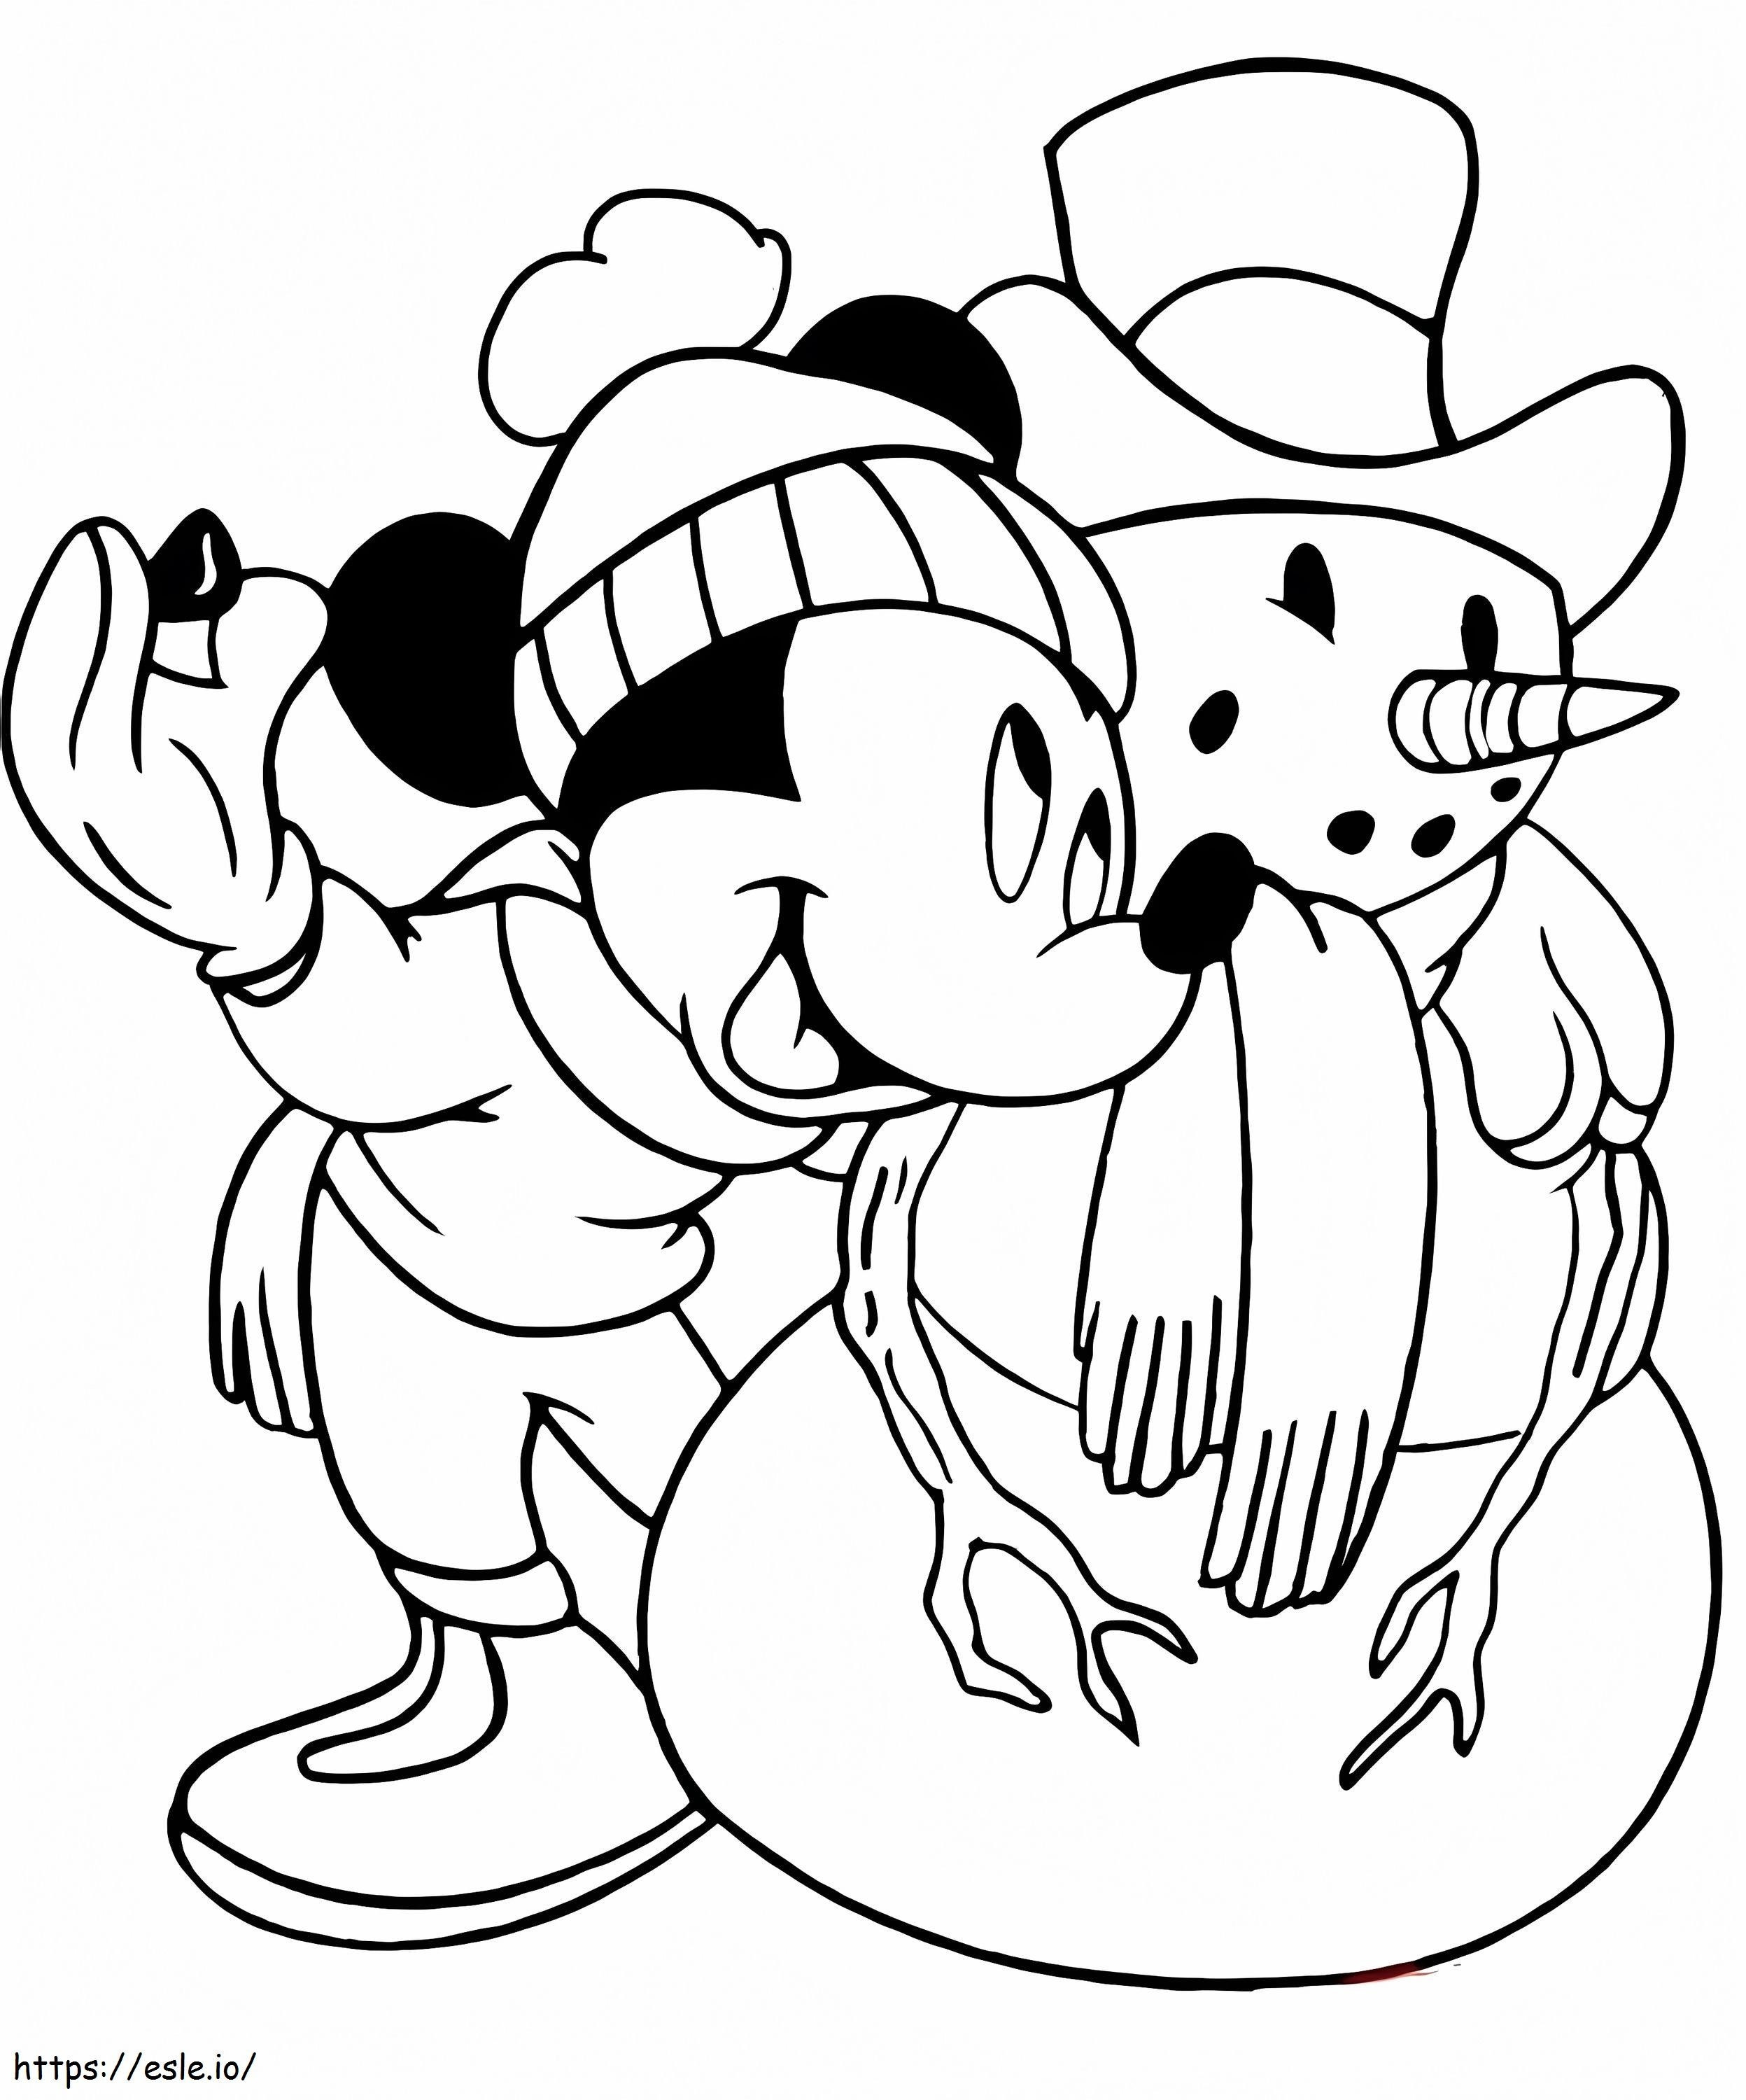 Mickey e boneco de neve para colorir